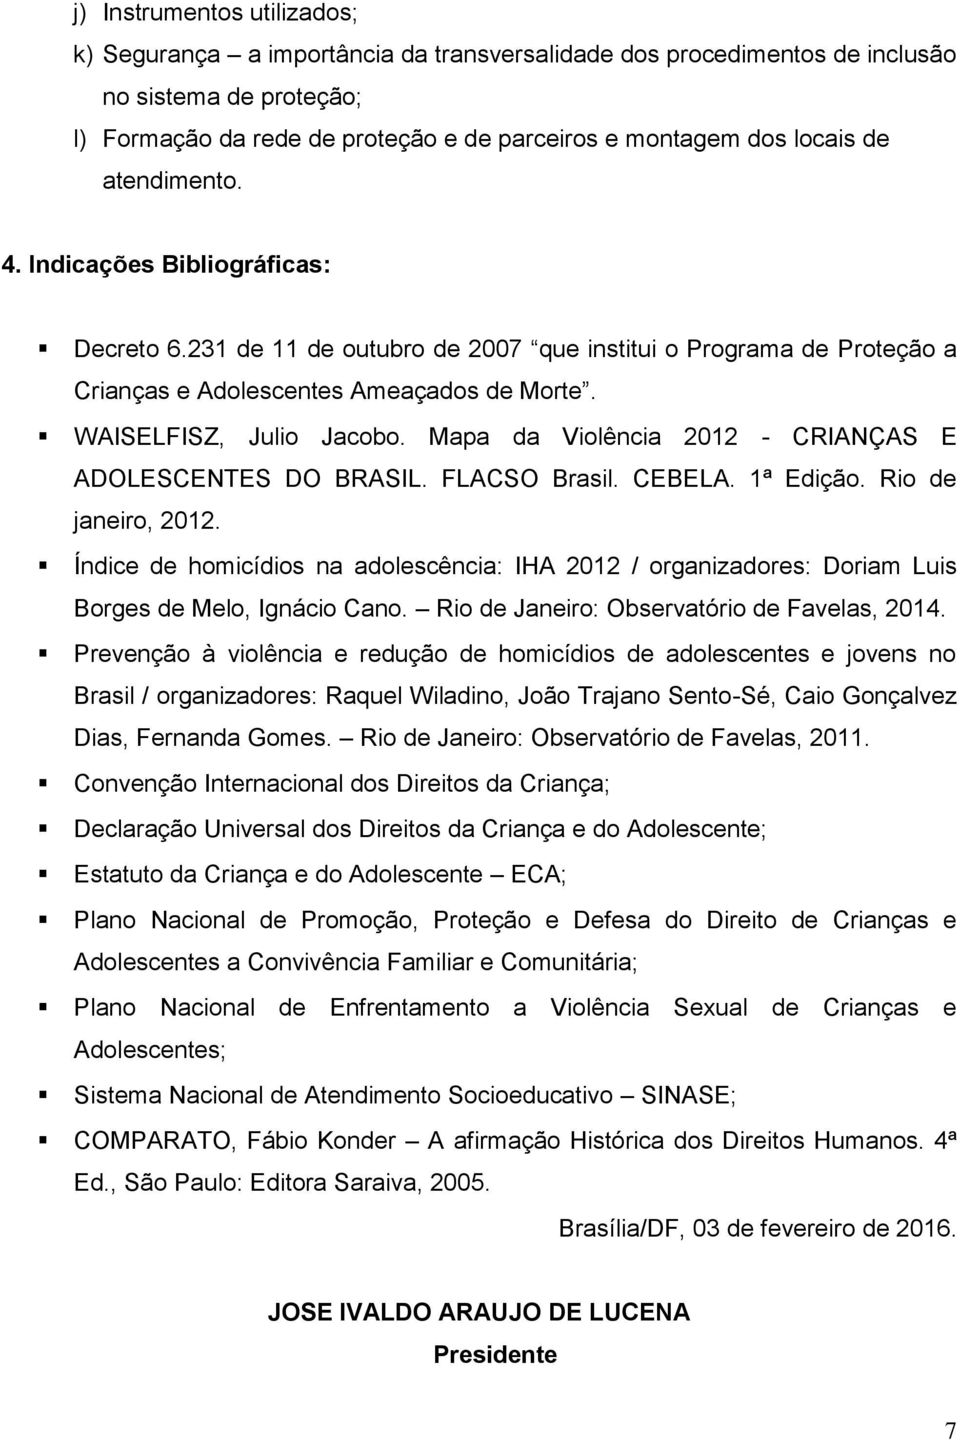 Mapa da Violência 2012 - CRIANÇAS E ADOLESCENTES DO BRASIL. FLACSO Brasil. CEBELA. 1ª Edição. Rio de janeiro, 2012.